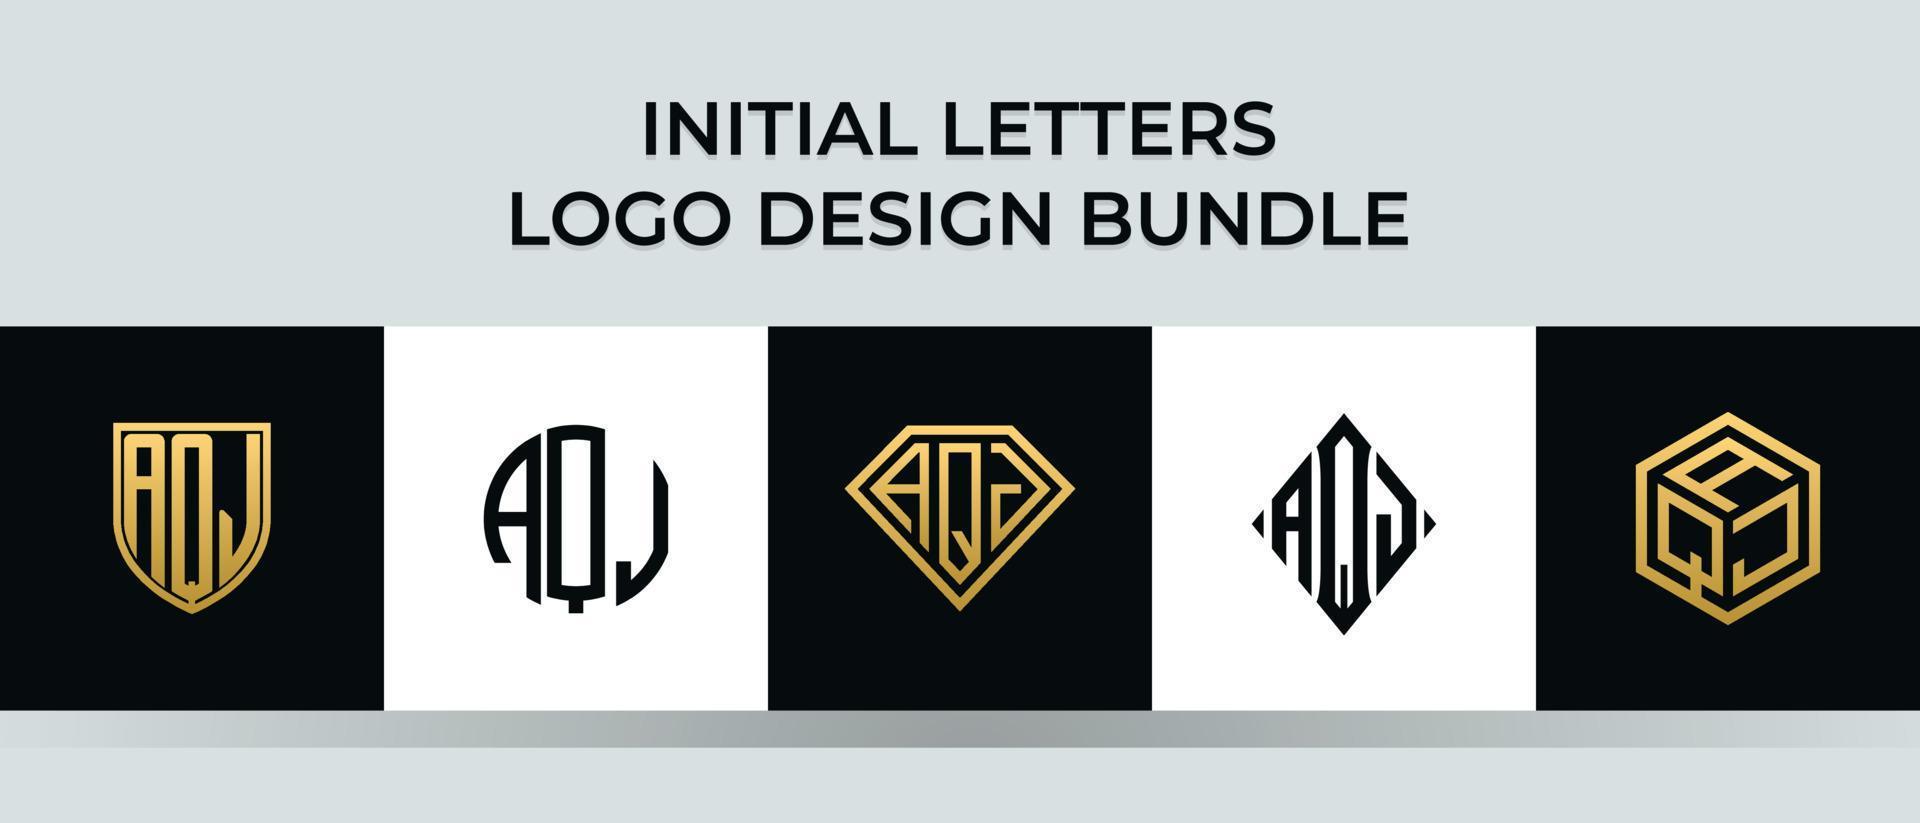 lettere iniziali aqj logo design bundle vettore